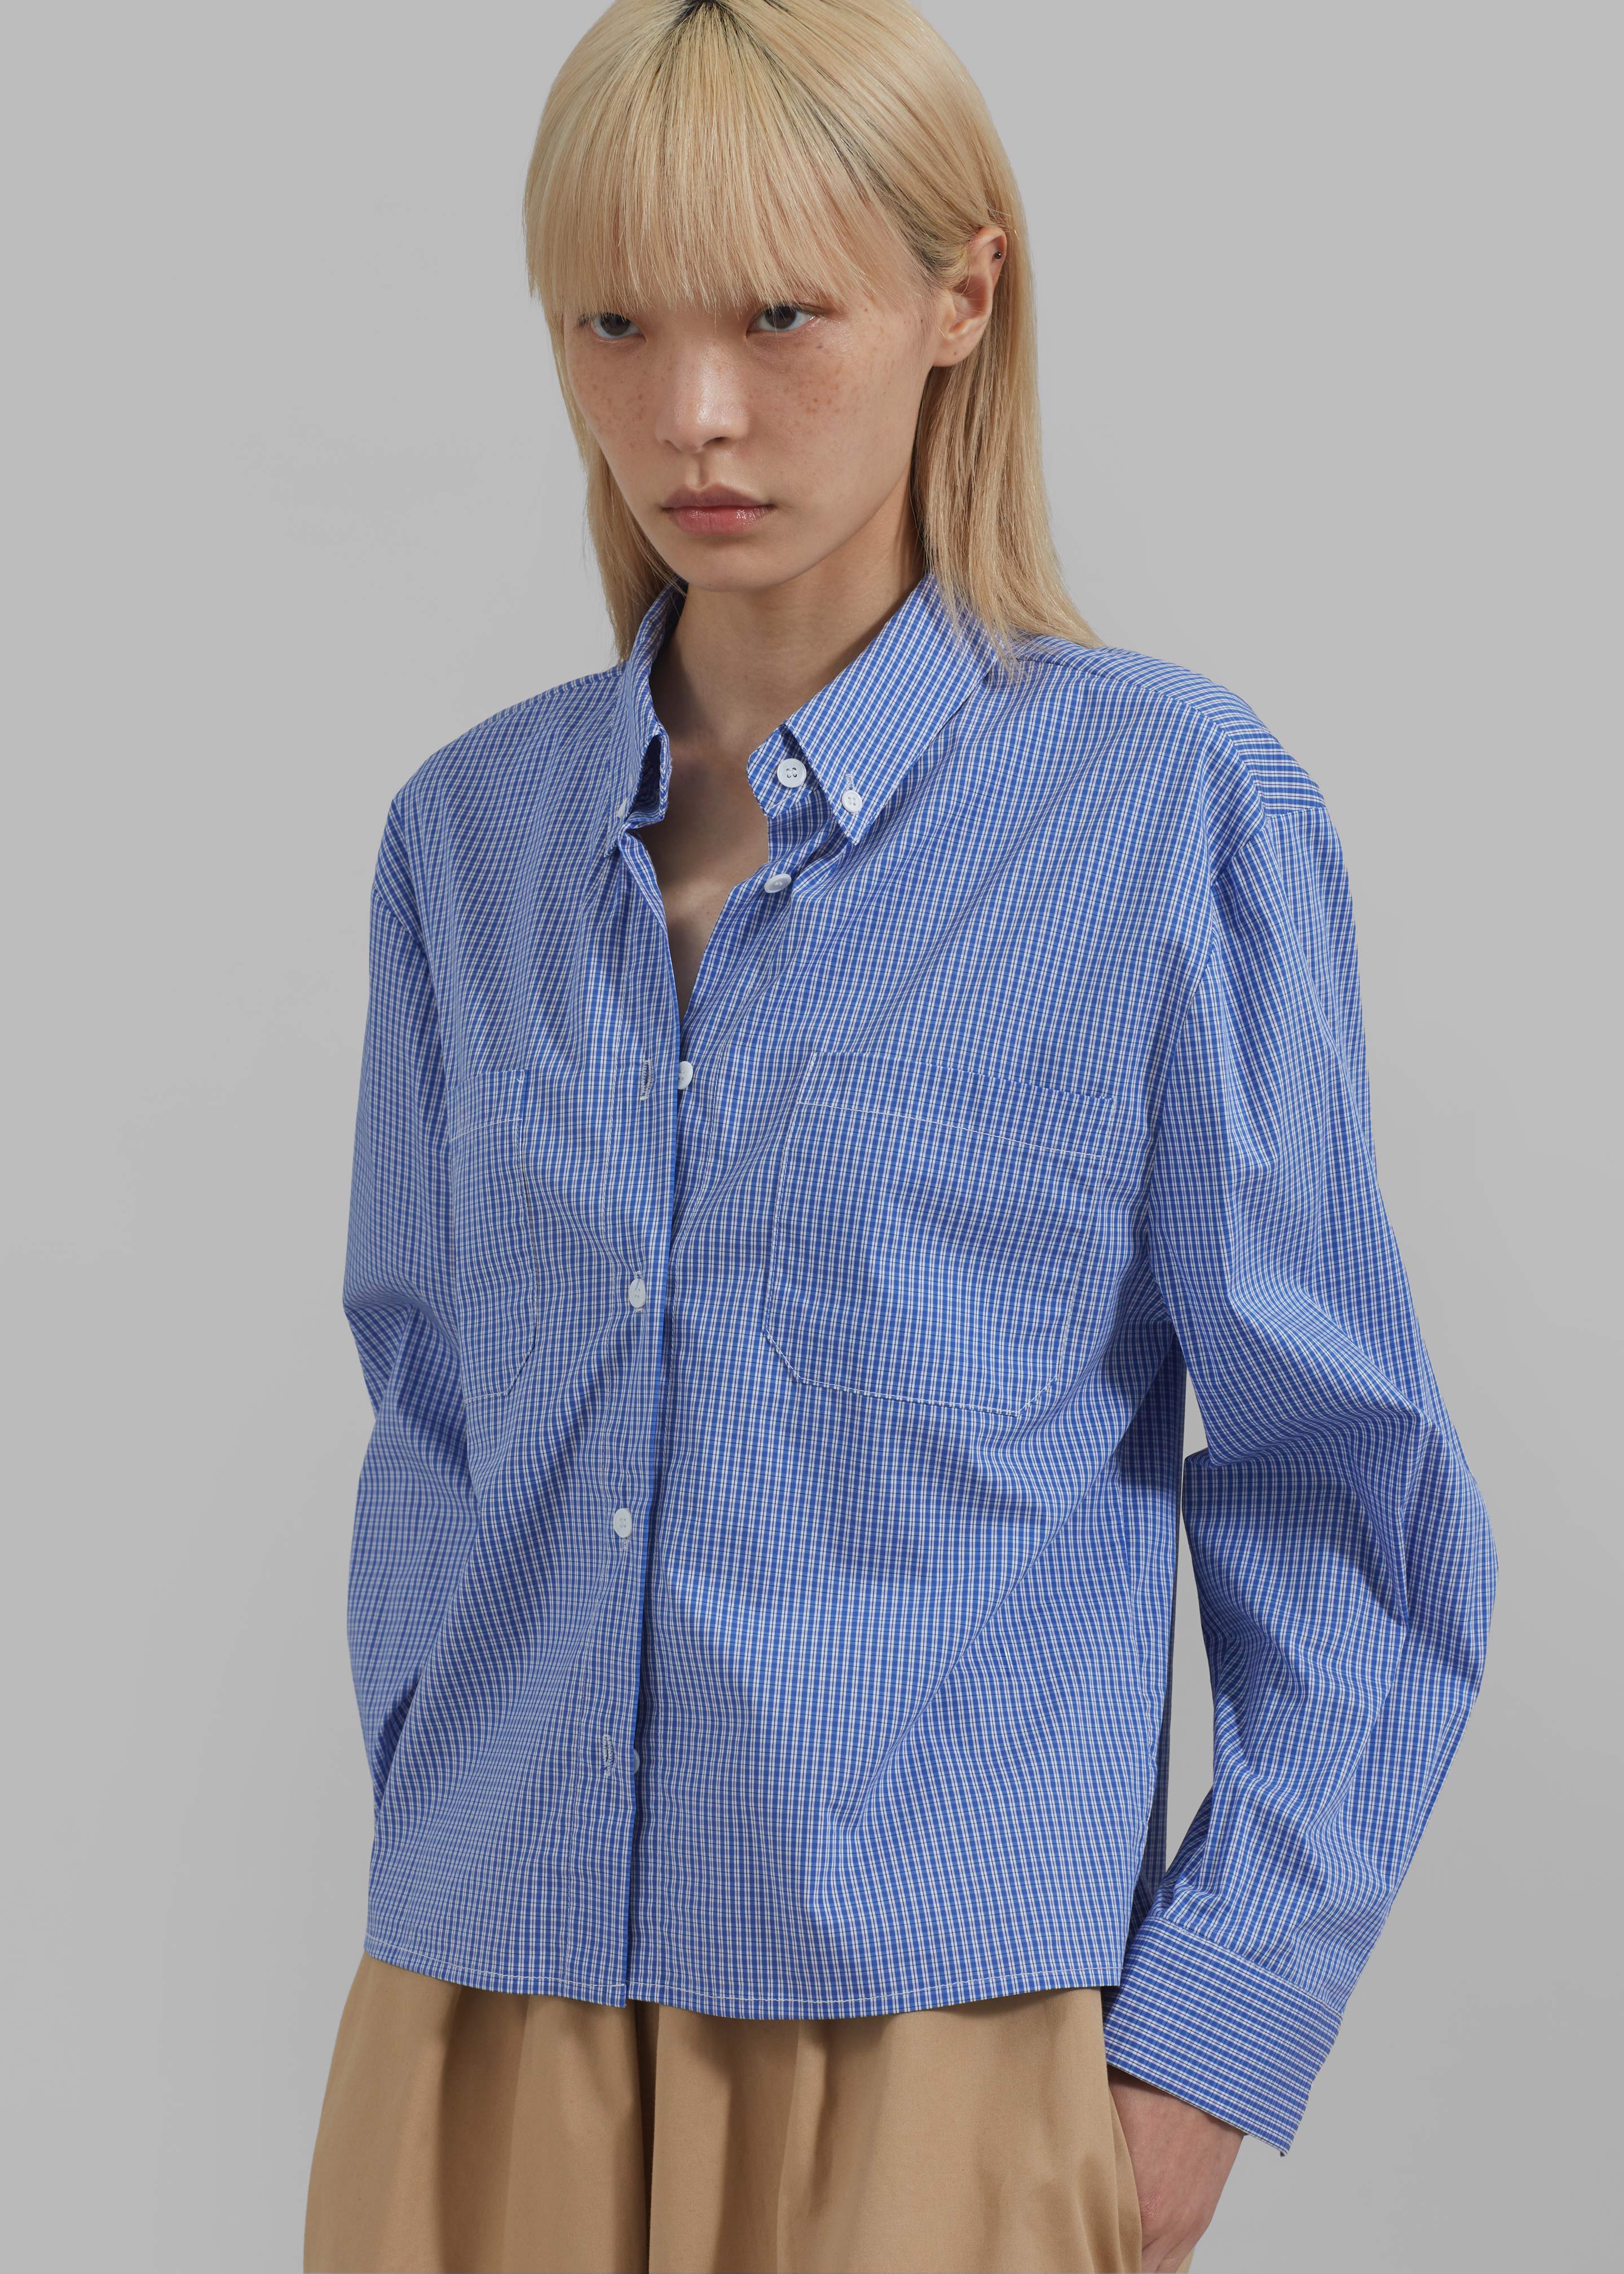 Kessa Gingham Button Up Shirt - Blue - 3